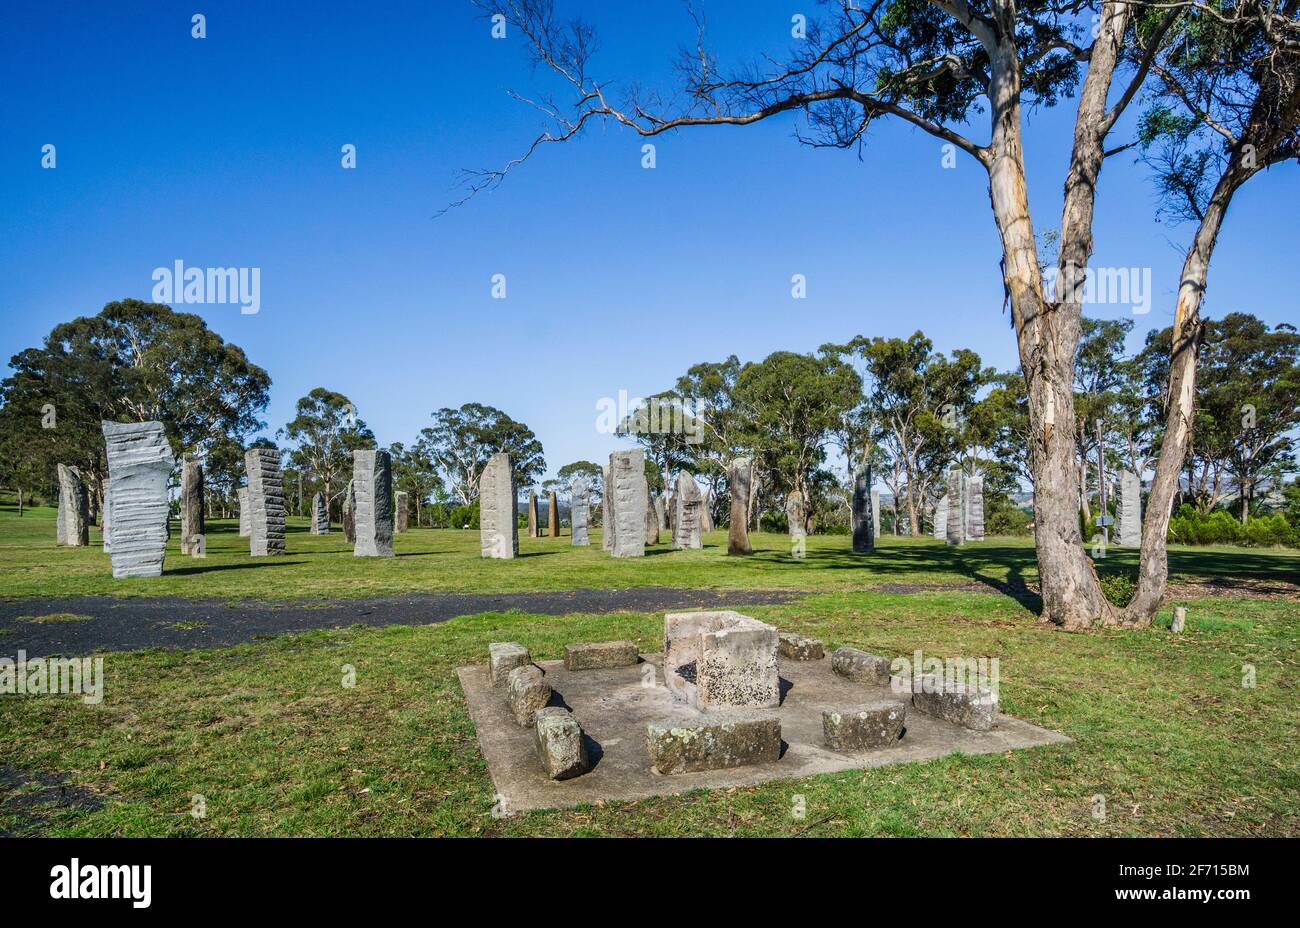 Les pierres sur pied australiennes, récreusées en 1992 à Glen Innes, les monolithes rendent hommage à l'héritage celtique des premiers colons européens jusqu'à Th Banque D'Images